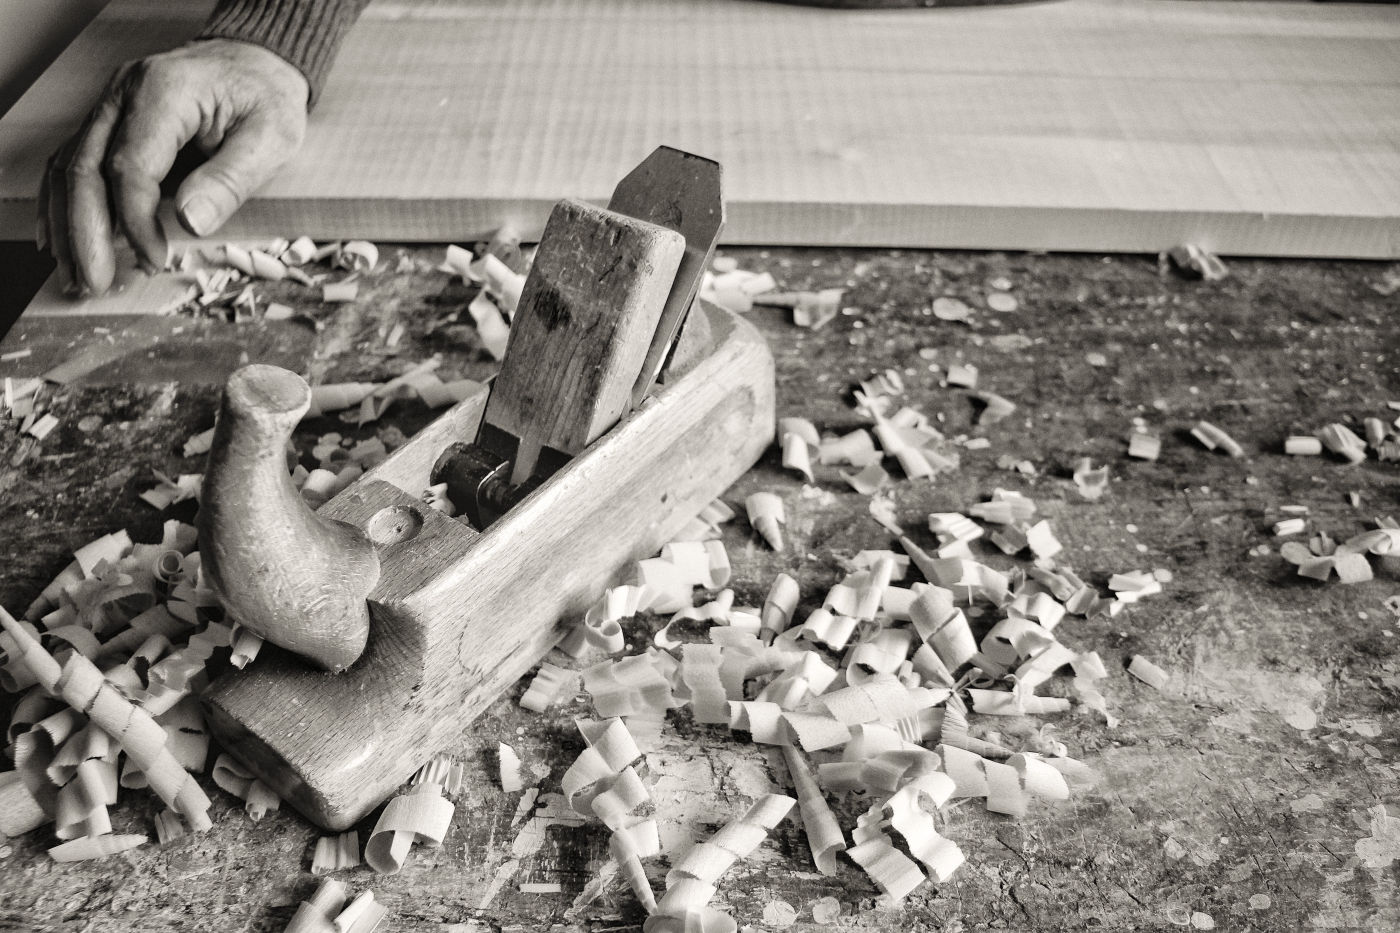 Comini Mobili, lavorazione del legno con antiche tecniche artigianali